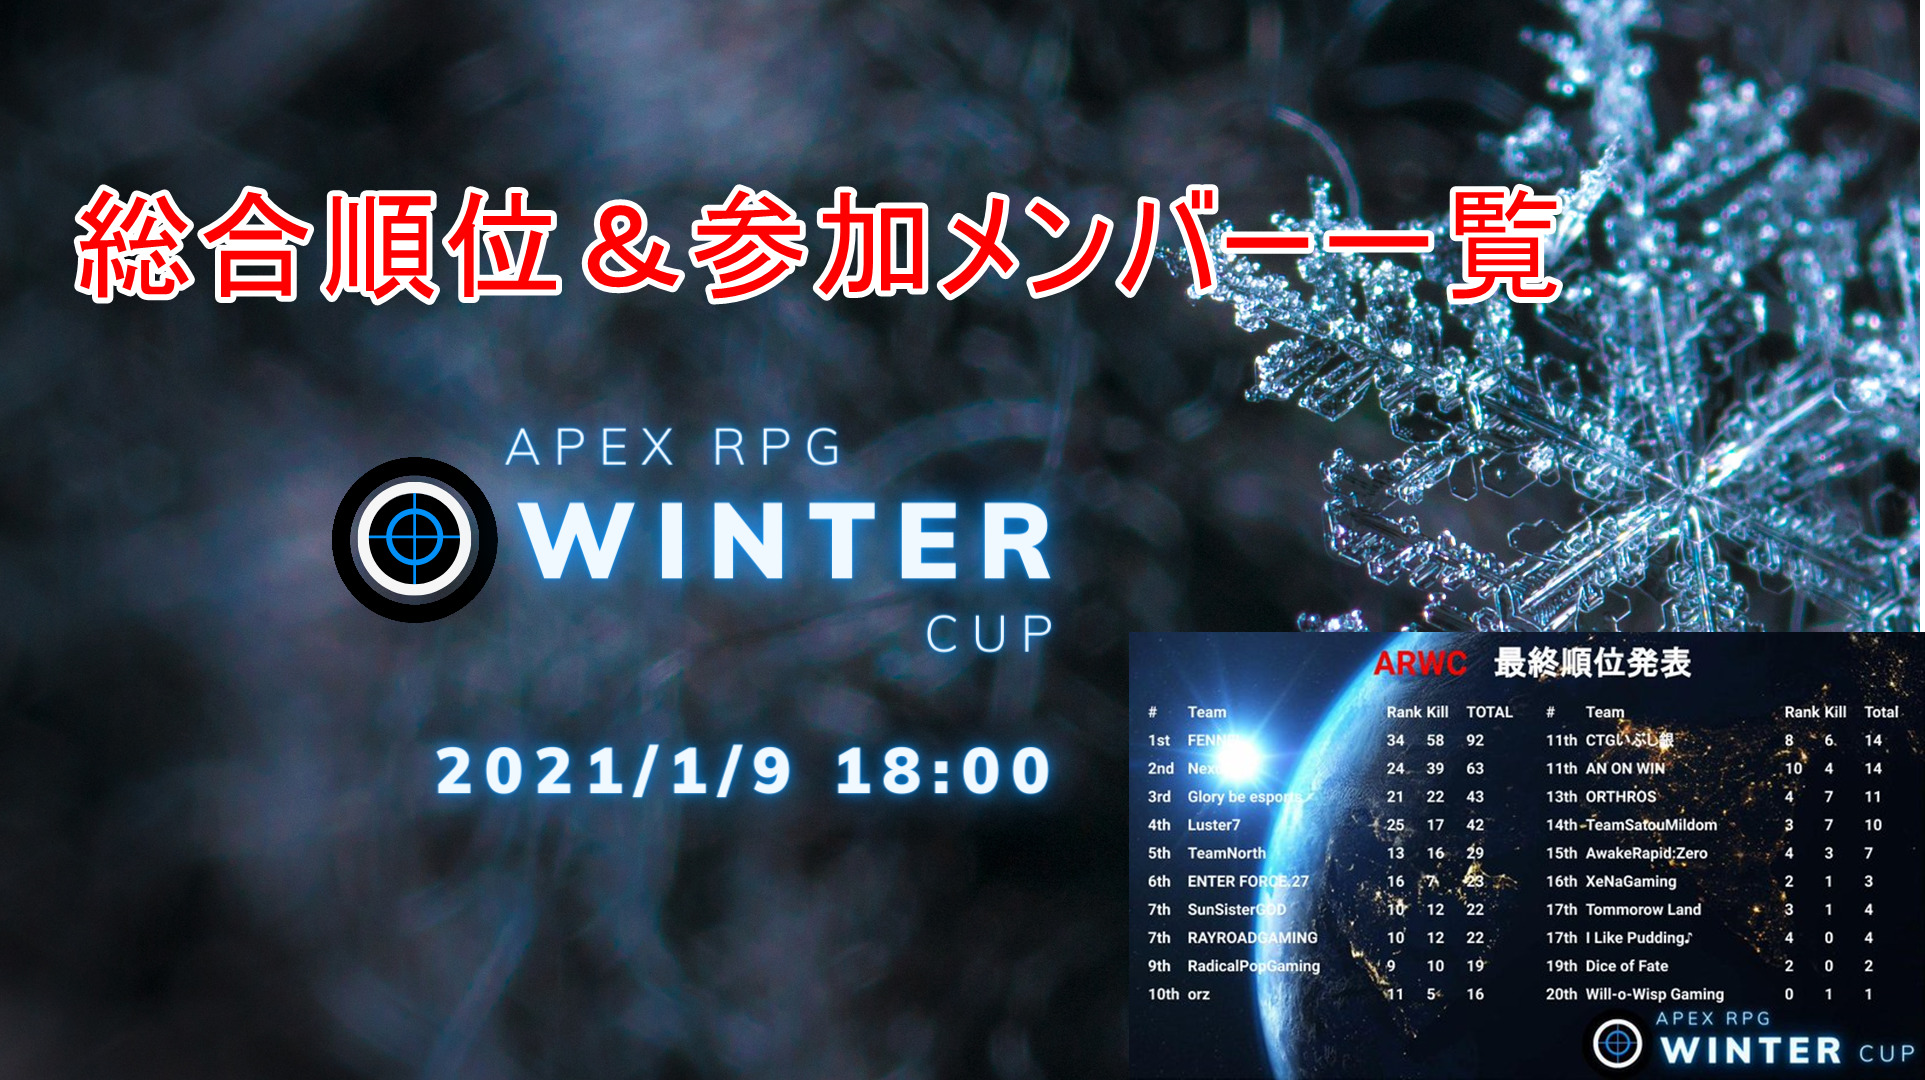 Apex Apex Rpg Winter Cupは招待チームであるfennelが大差をつけて優勝 見事商品と次回大会のシード枠を獲得する そくしぃblog